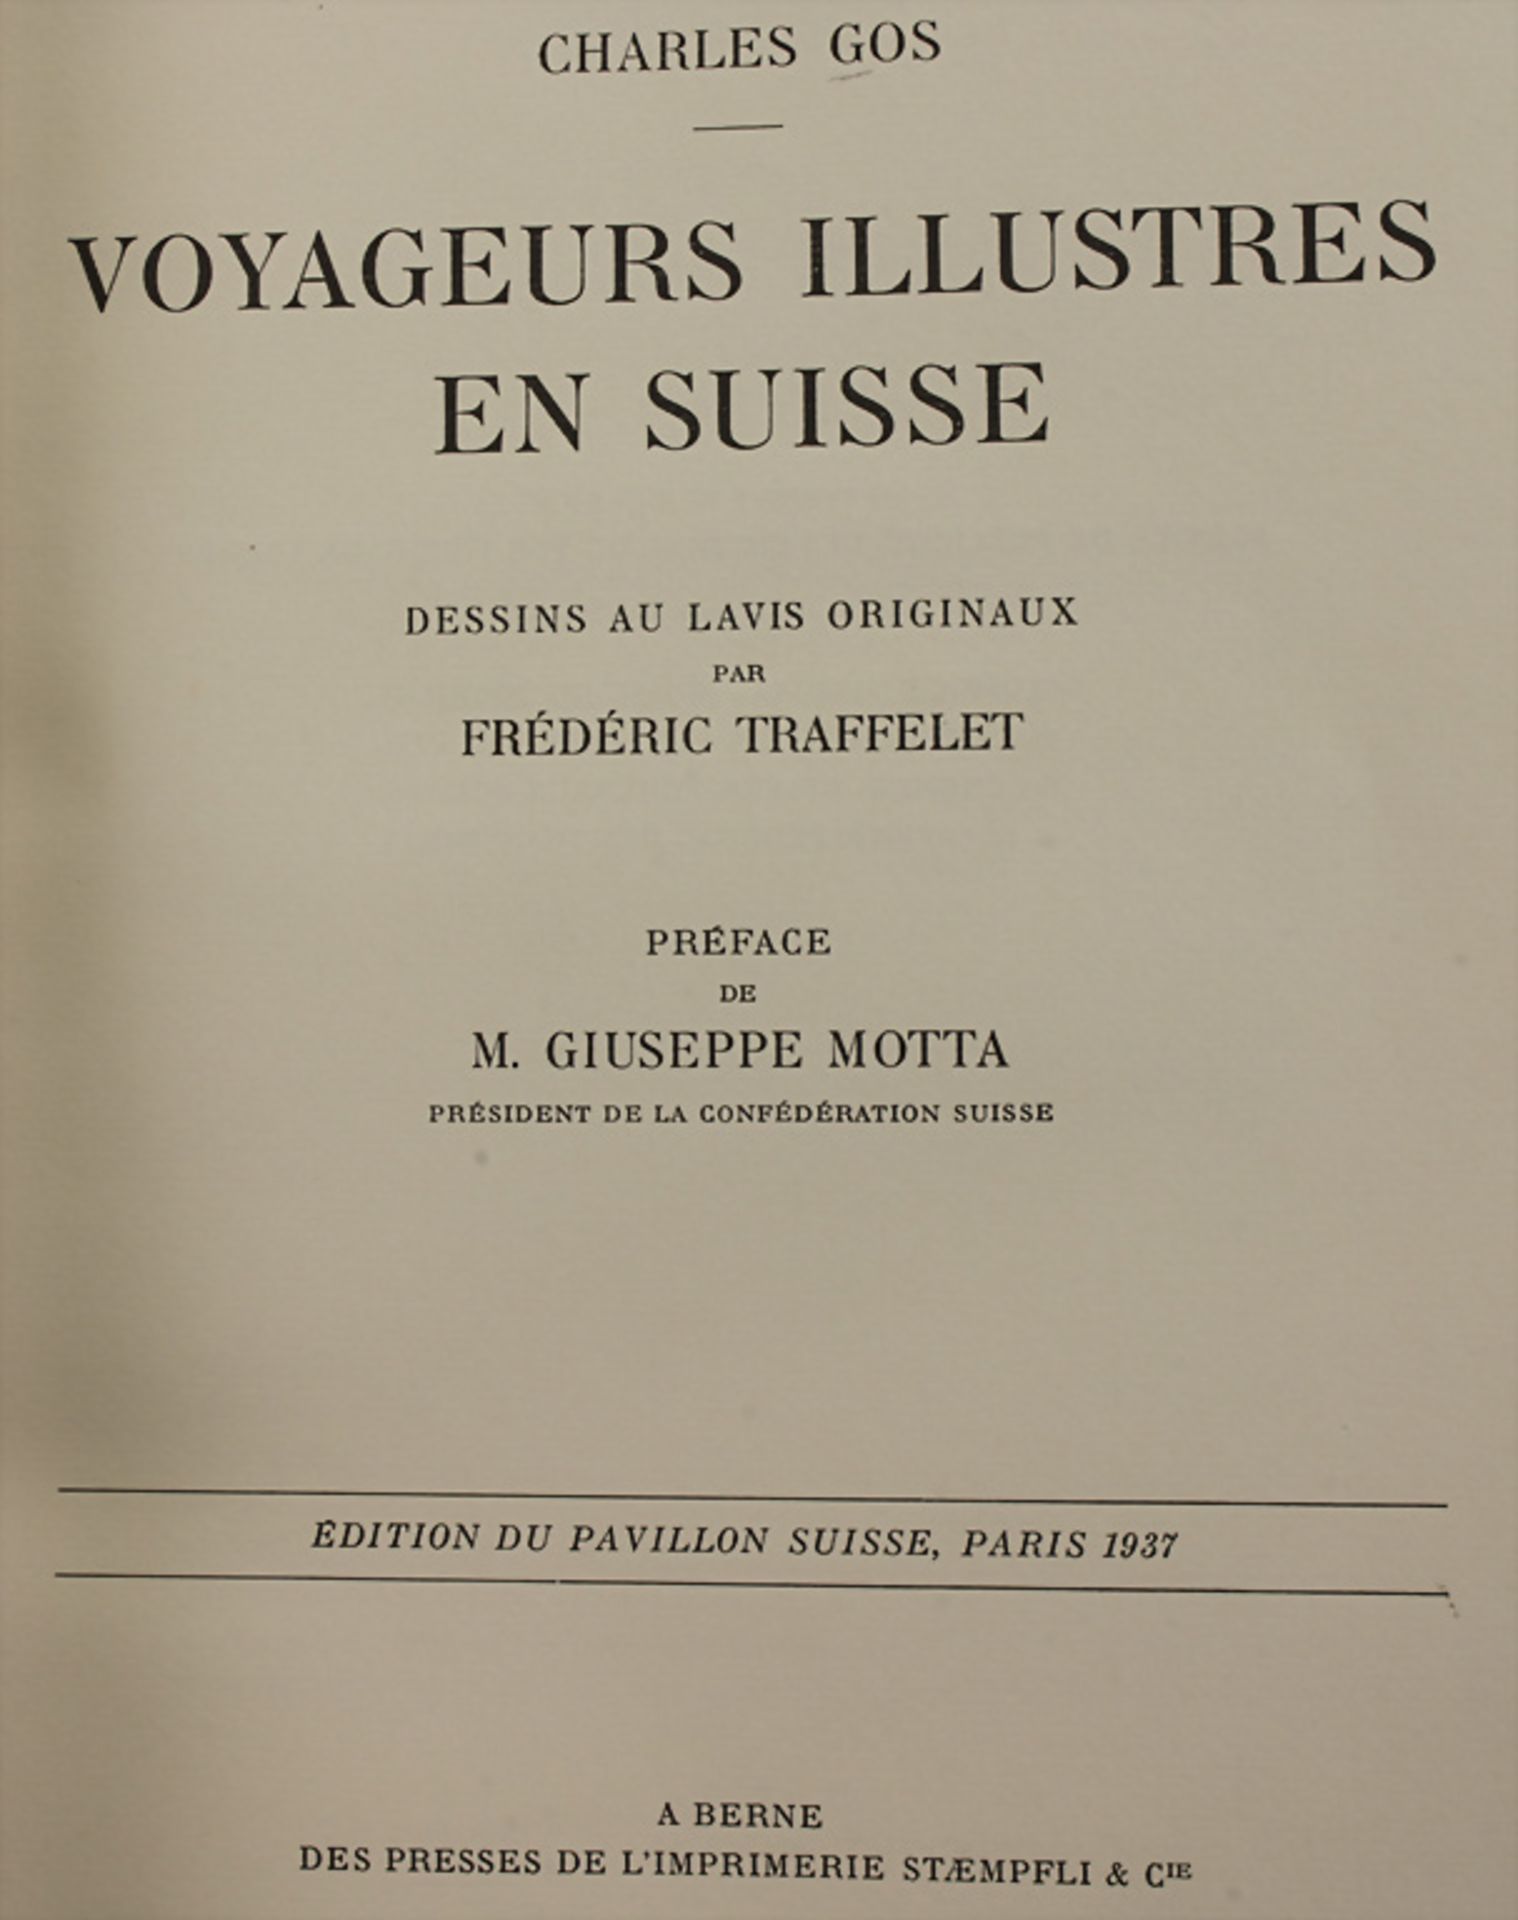 Charles Gos (1885-1945), 'Voyageurs illustres en Suisse', Bern, 1937